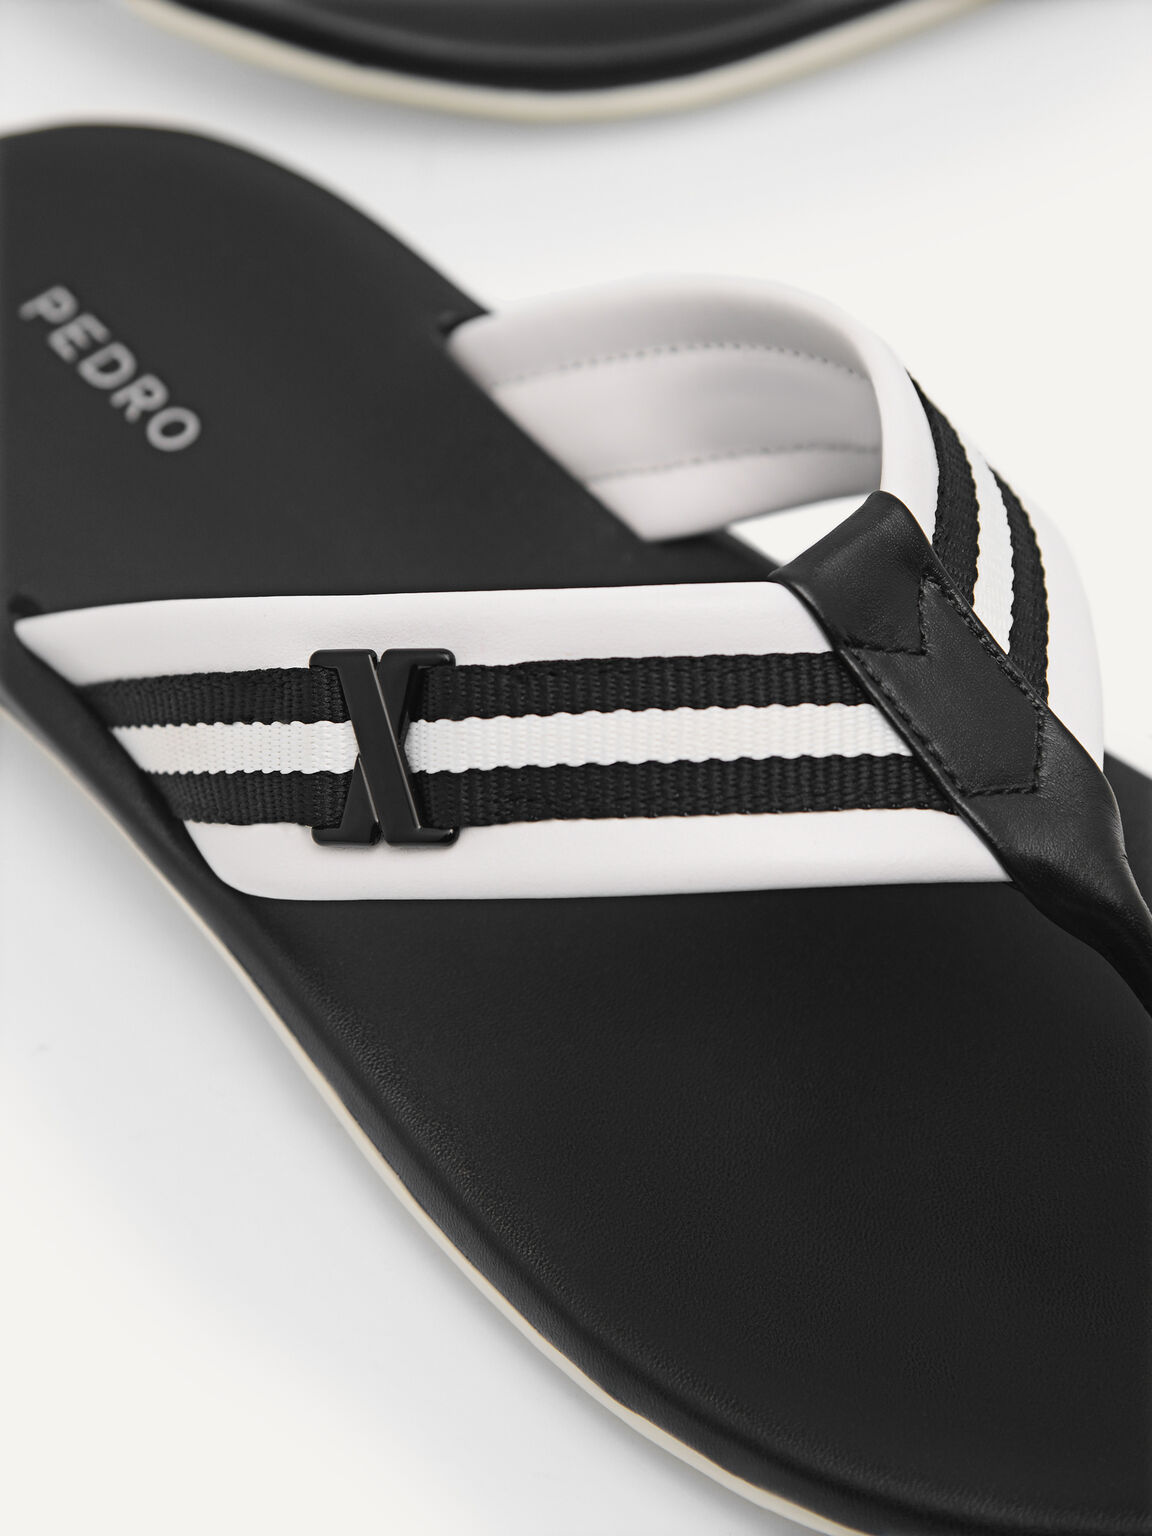 Thong Sandals, Black, hi-res